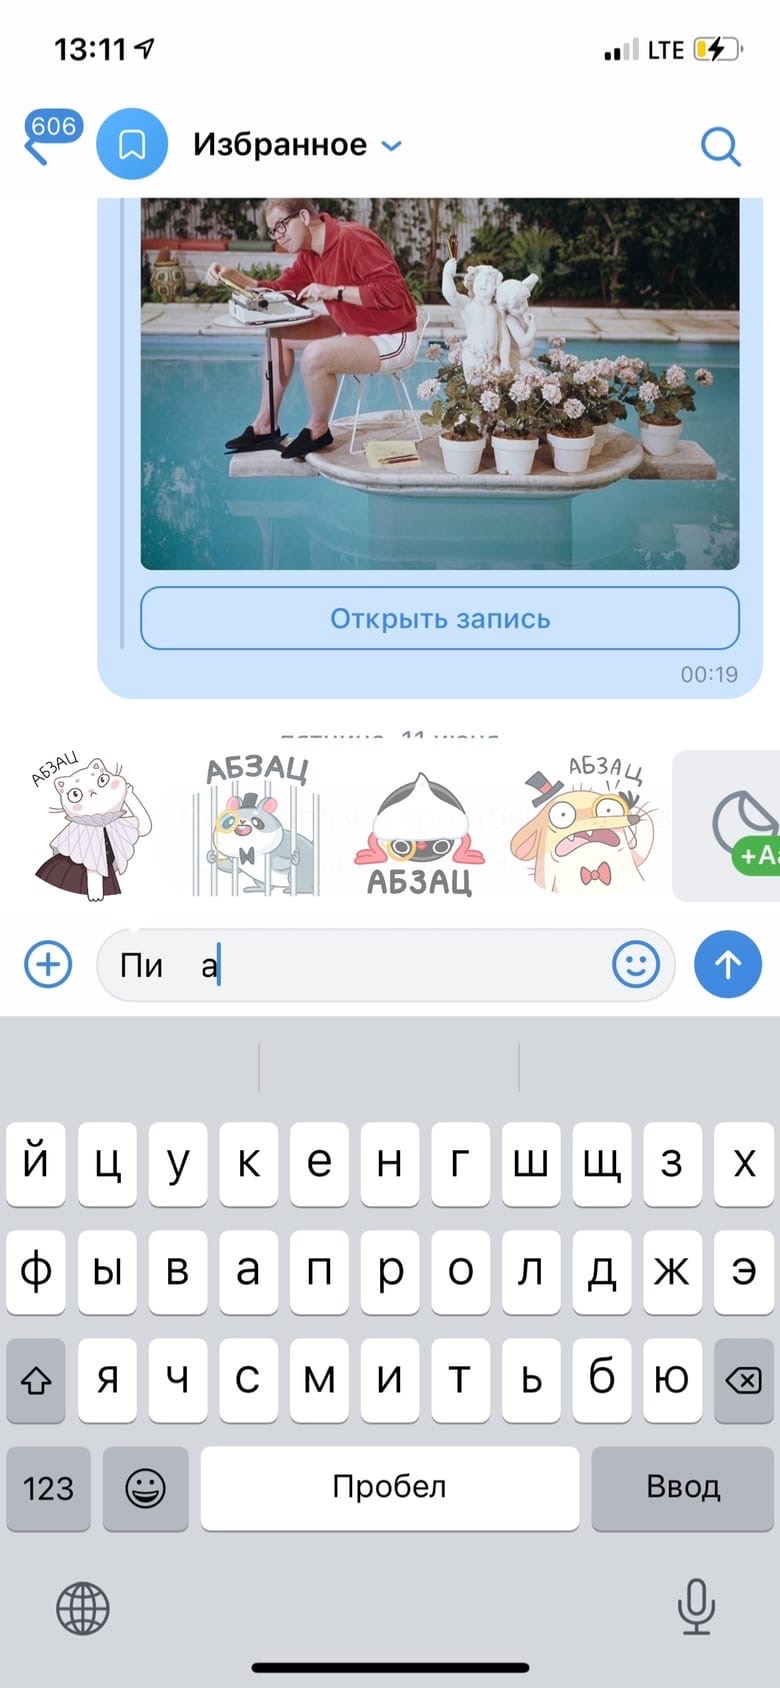 Для некоторых слов «ВКонтакте» дает даже несколько «интеллигентных» аналогов, а часть стикеров предлагает на замену разным выражениям